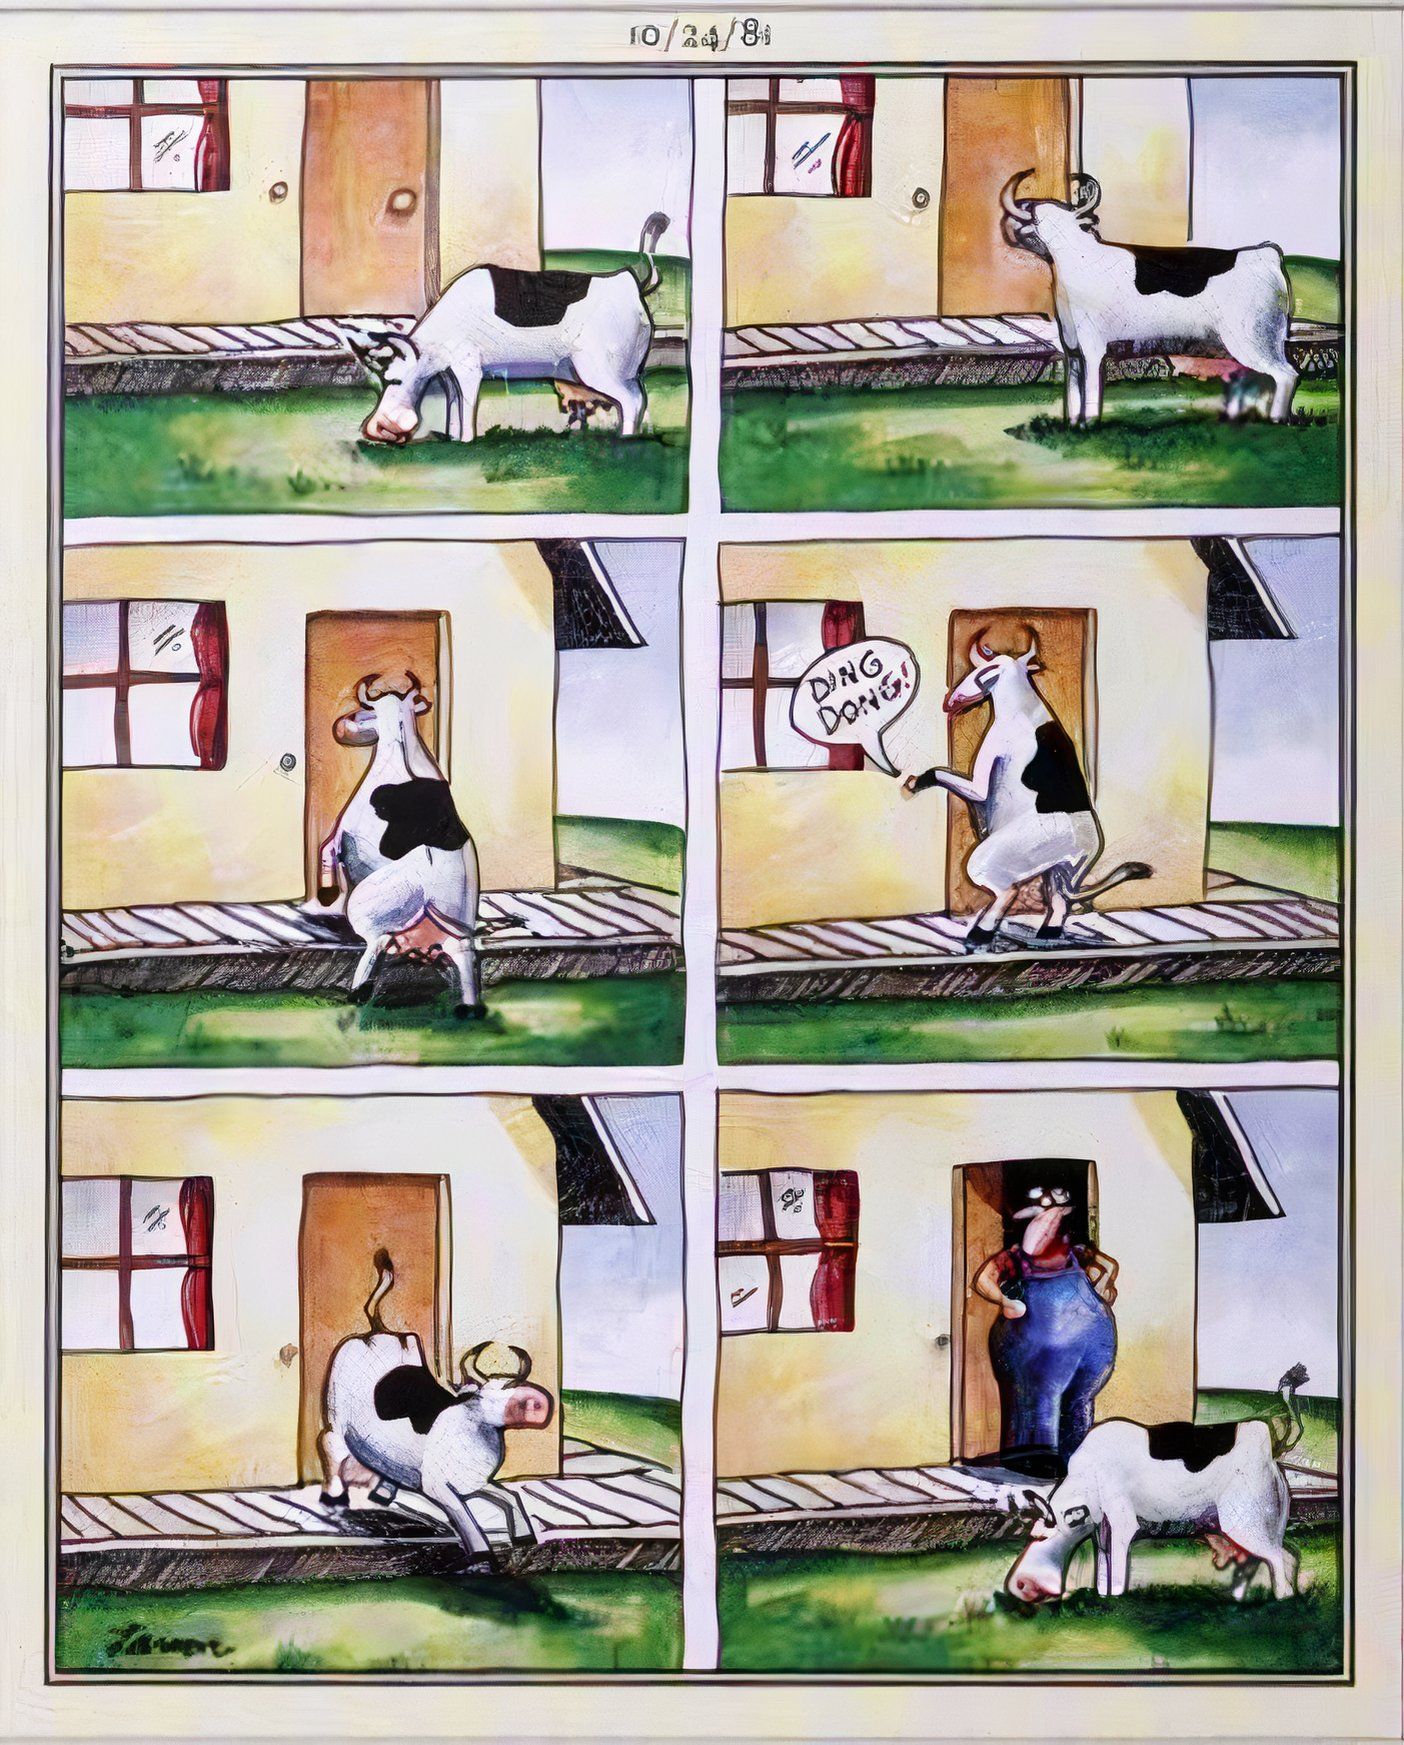 Far Side, 24 de outubro de 1981, uma vaca brincando de ding dong em seu dono